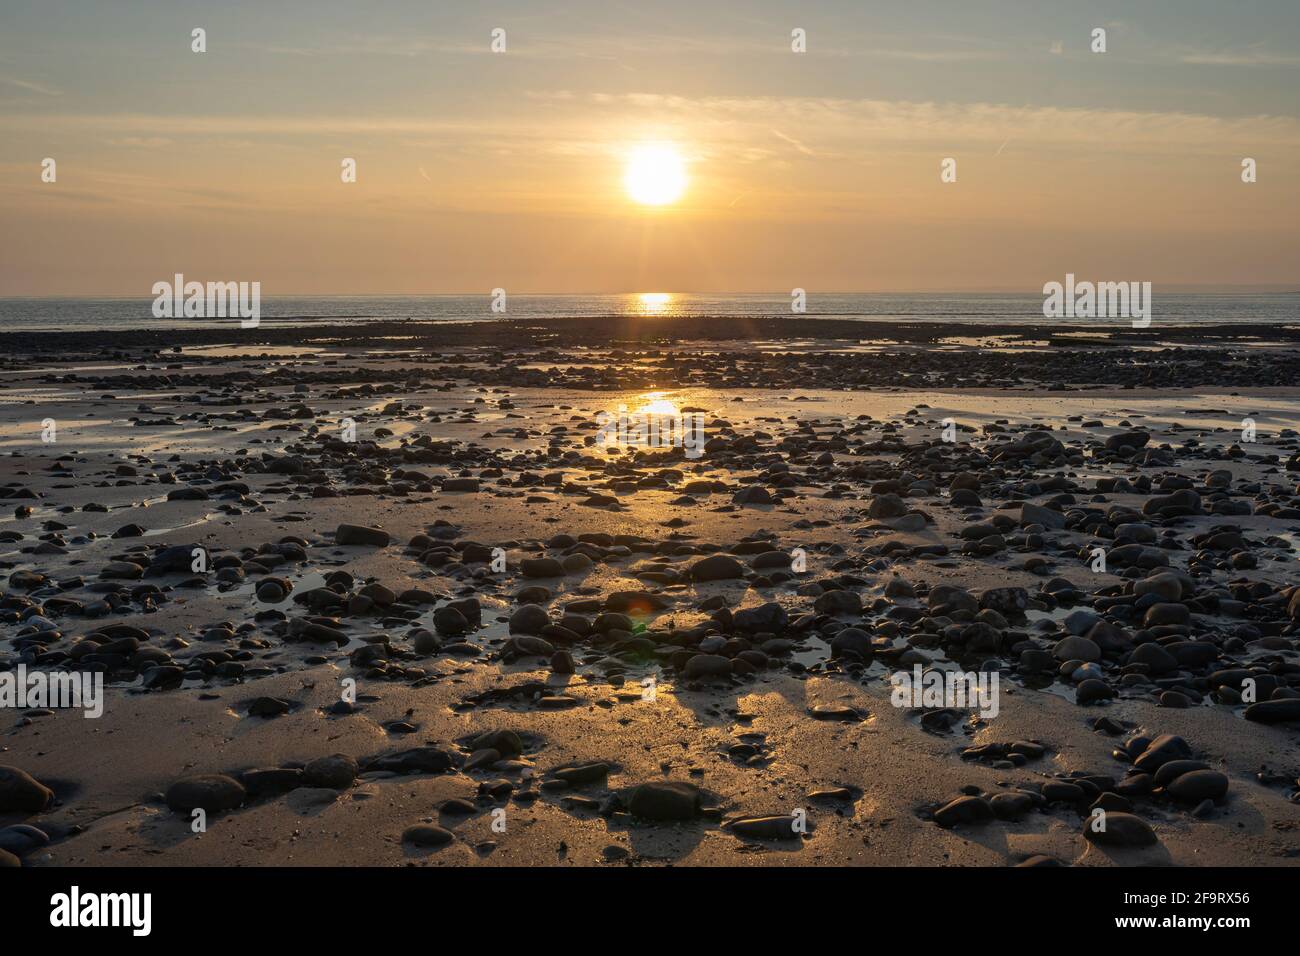 Whiteford Sands Beach Stones au coucher du soleil, la péninsule de Gower, Swansea, pays de Galles du Sud, Royaume-Uni. Toile de fond de la côte, pas de gens Banque D'Images